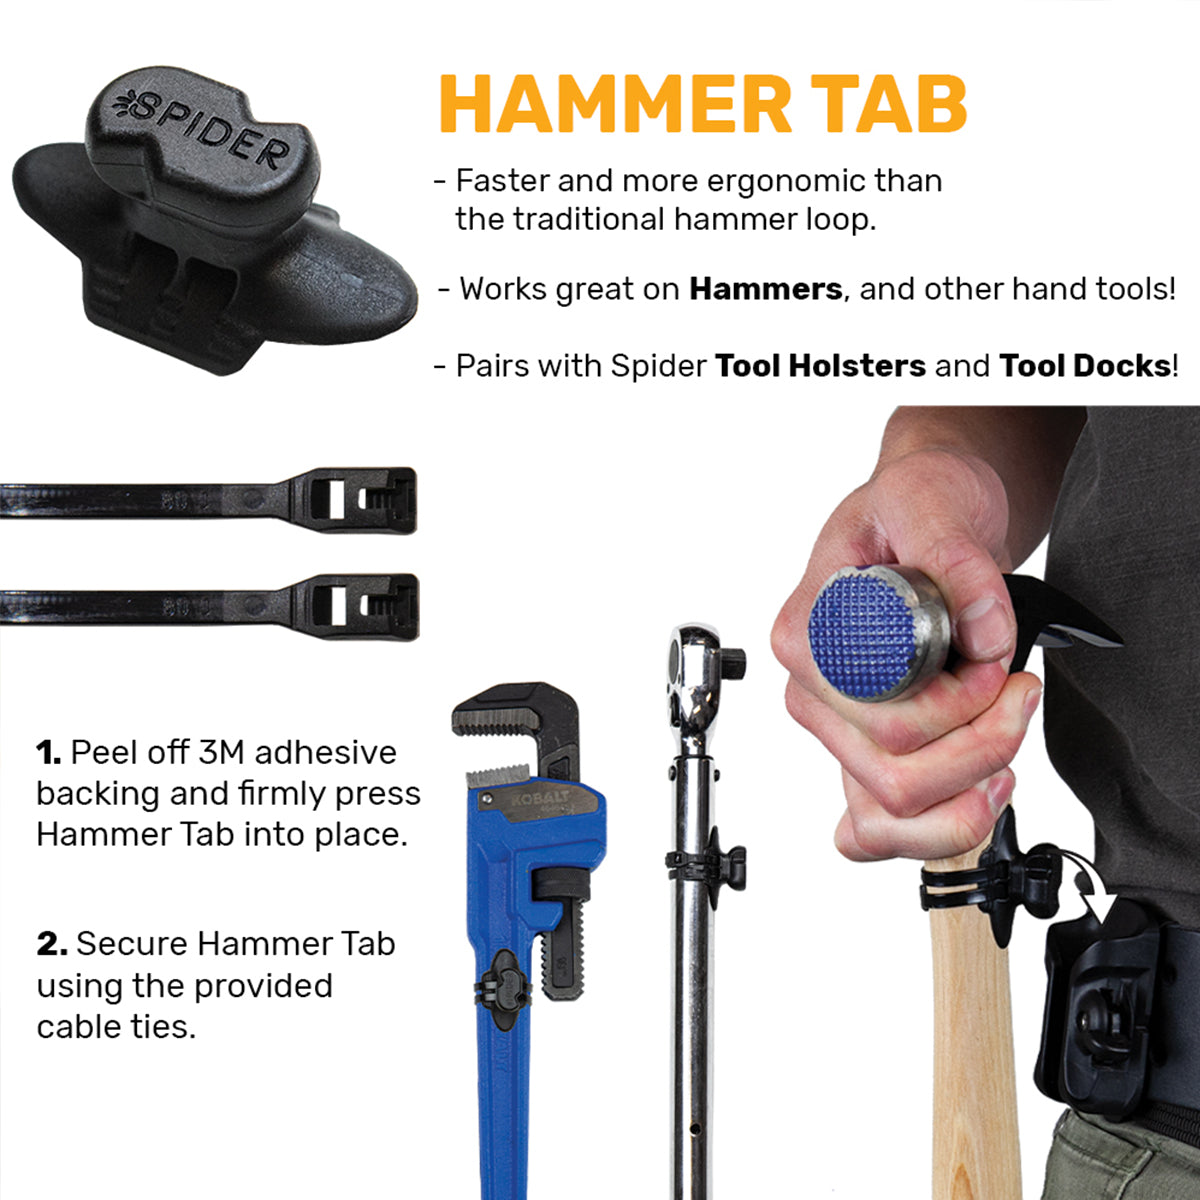 5560TH: Hammer Tab